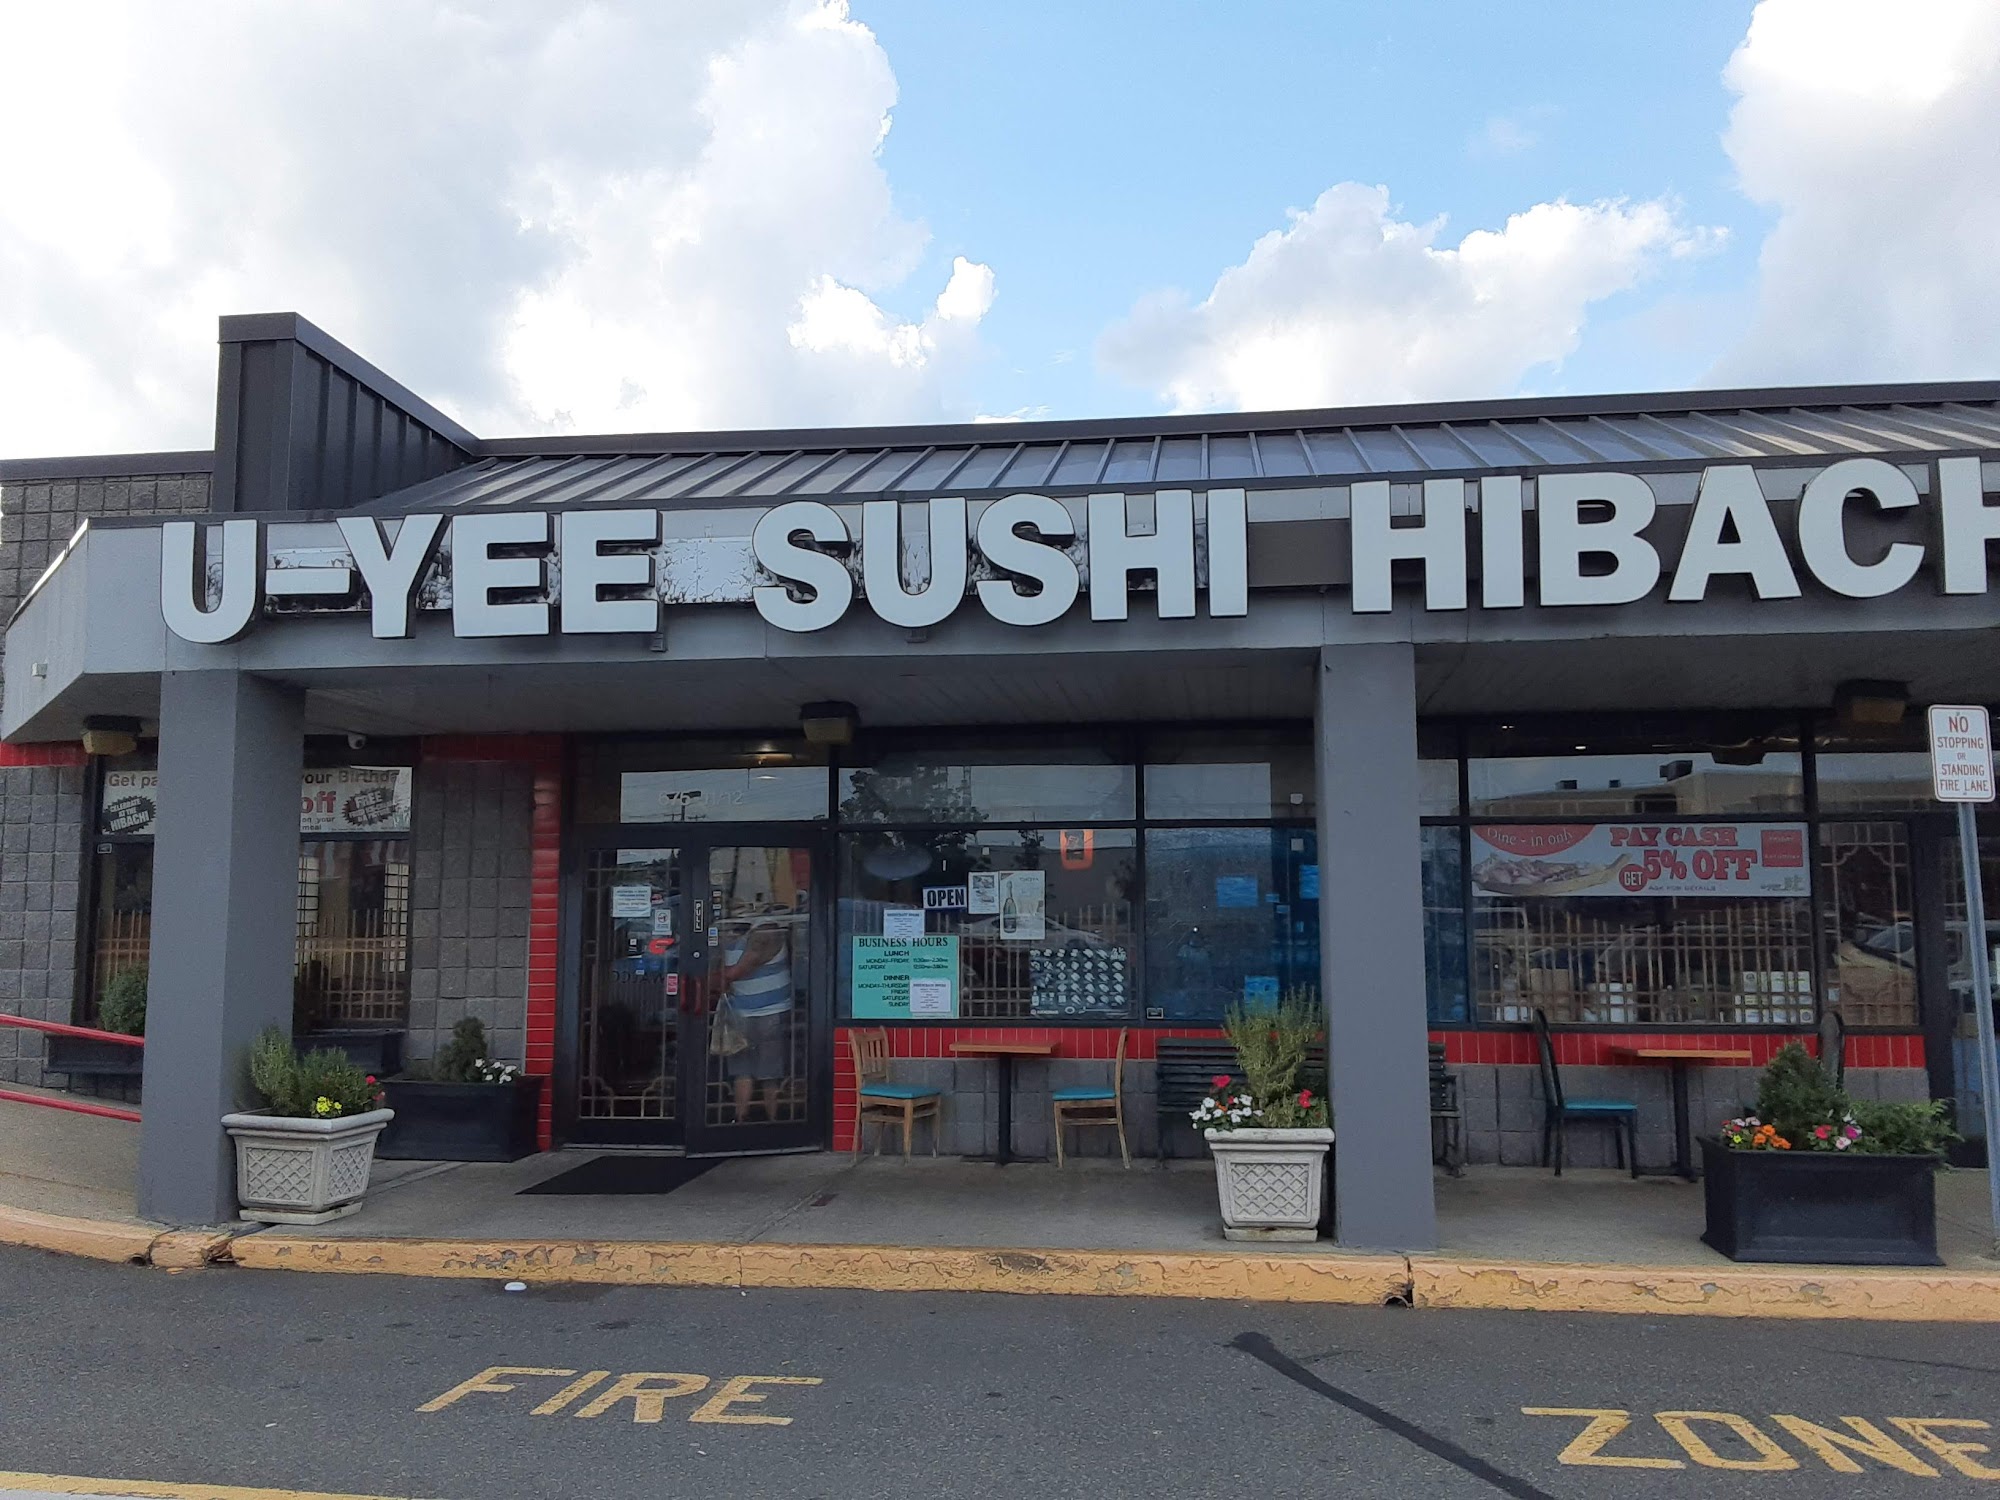 U-Yee Sushi & Hibachi